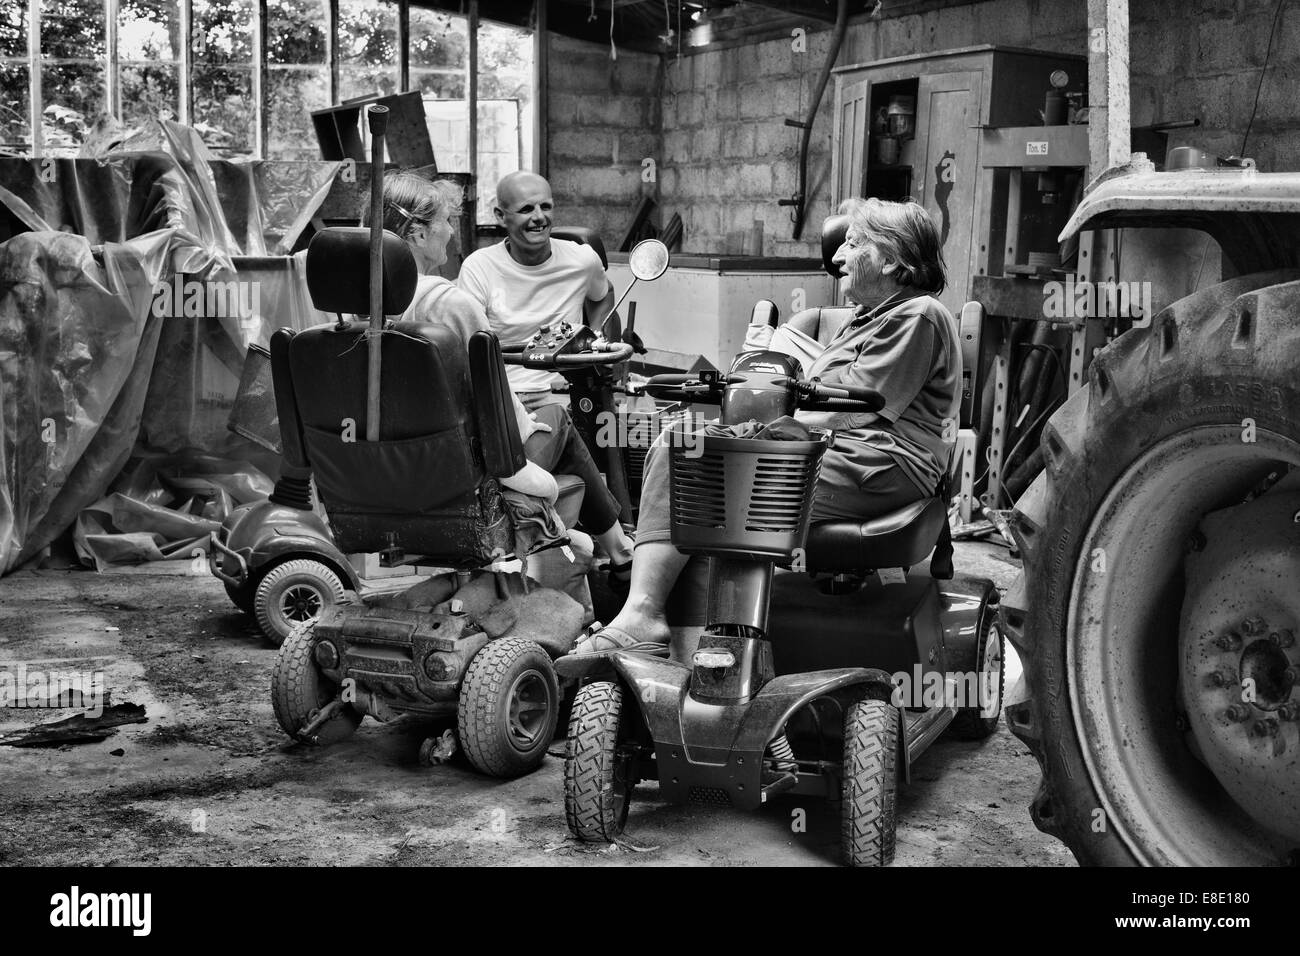 Tres personas sentadas sobre movilidad scooters chateando en un tractor viejo cobertizo Foto de stock